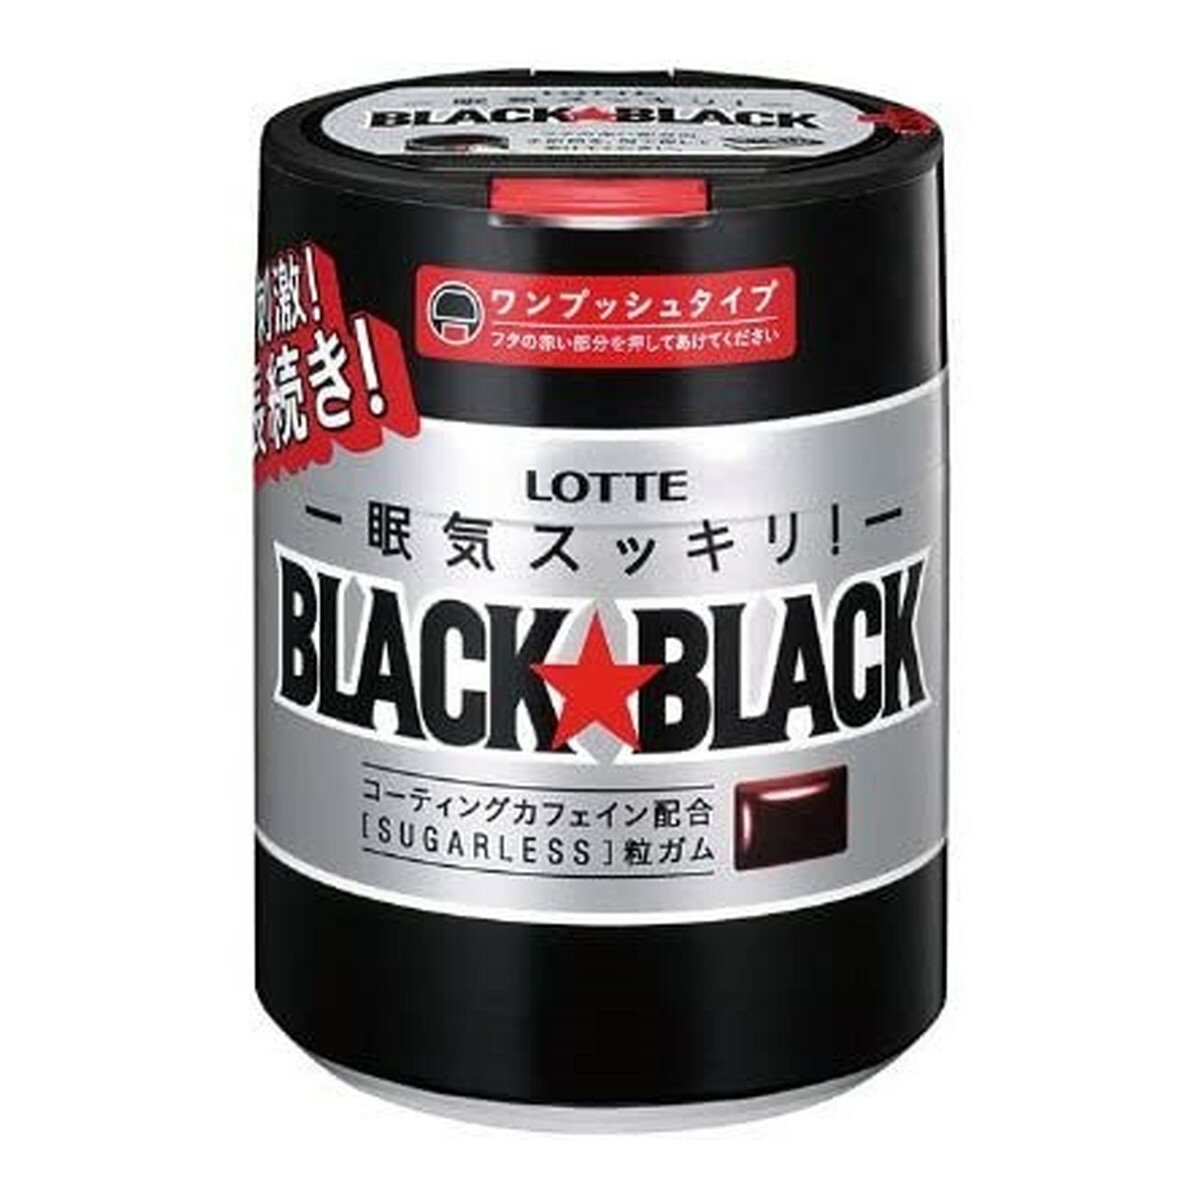 【送料込・まとめ買い×36個セット】ロッテ BLACK BLACK ブラックブラック ワンプッシュボトル 140g